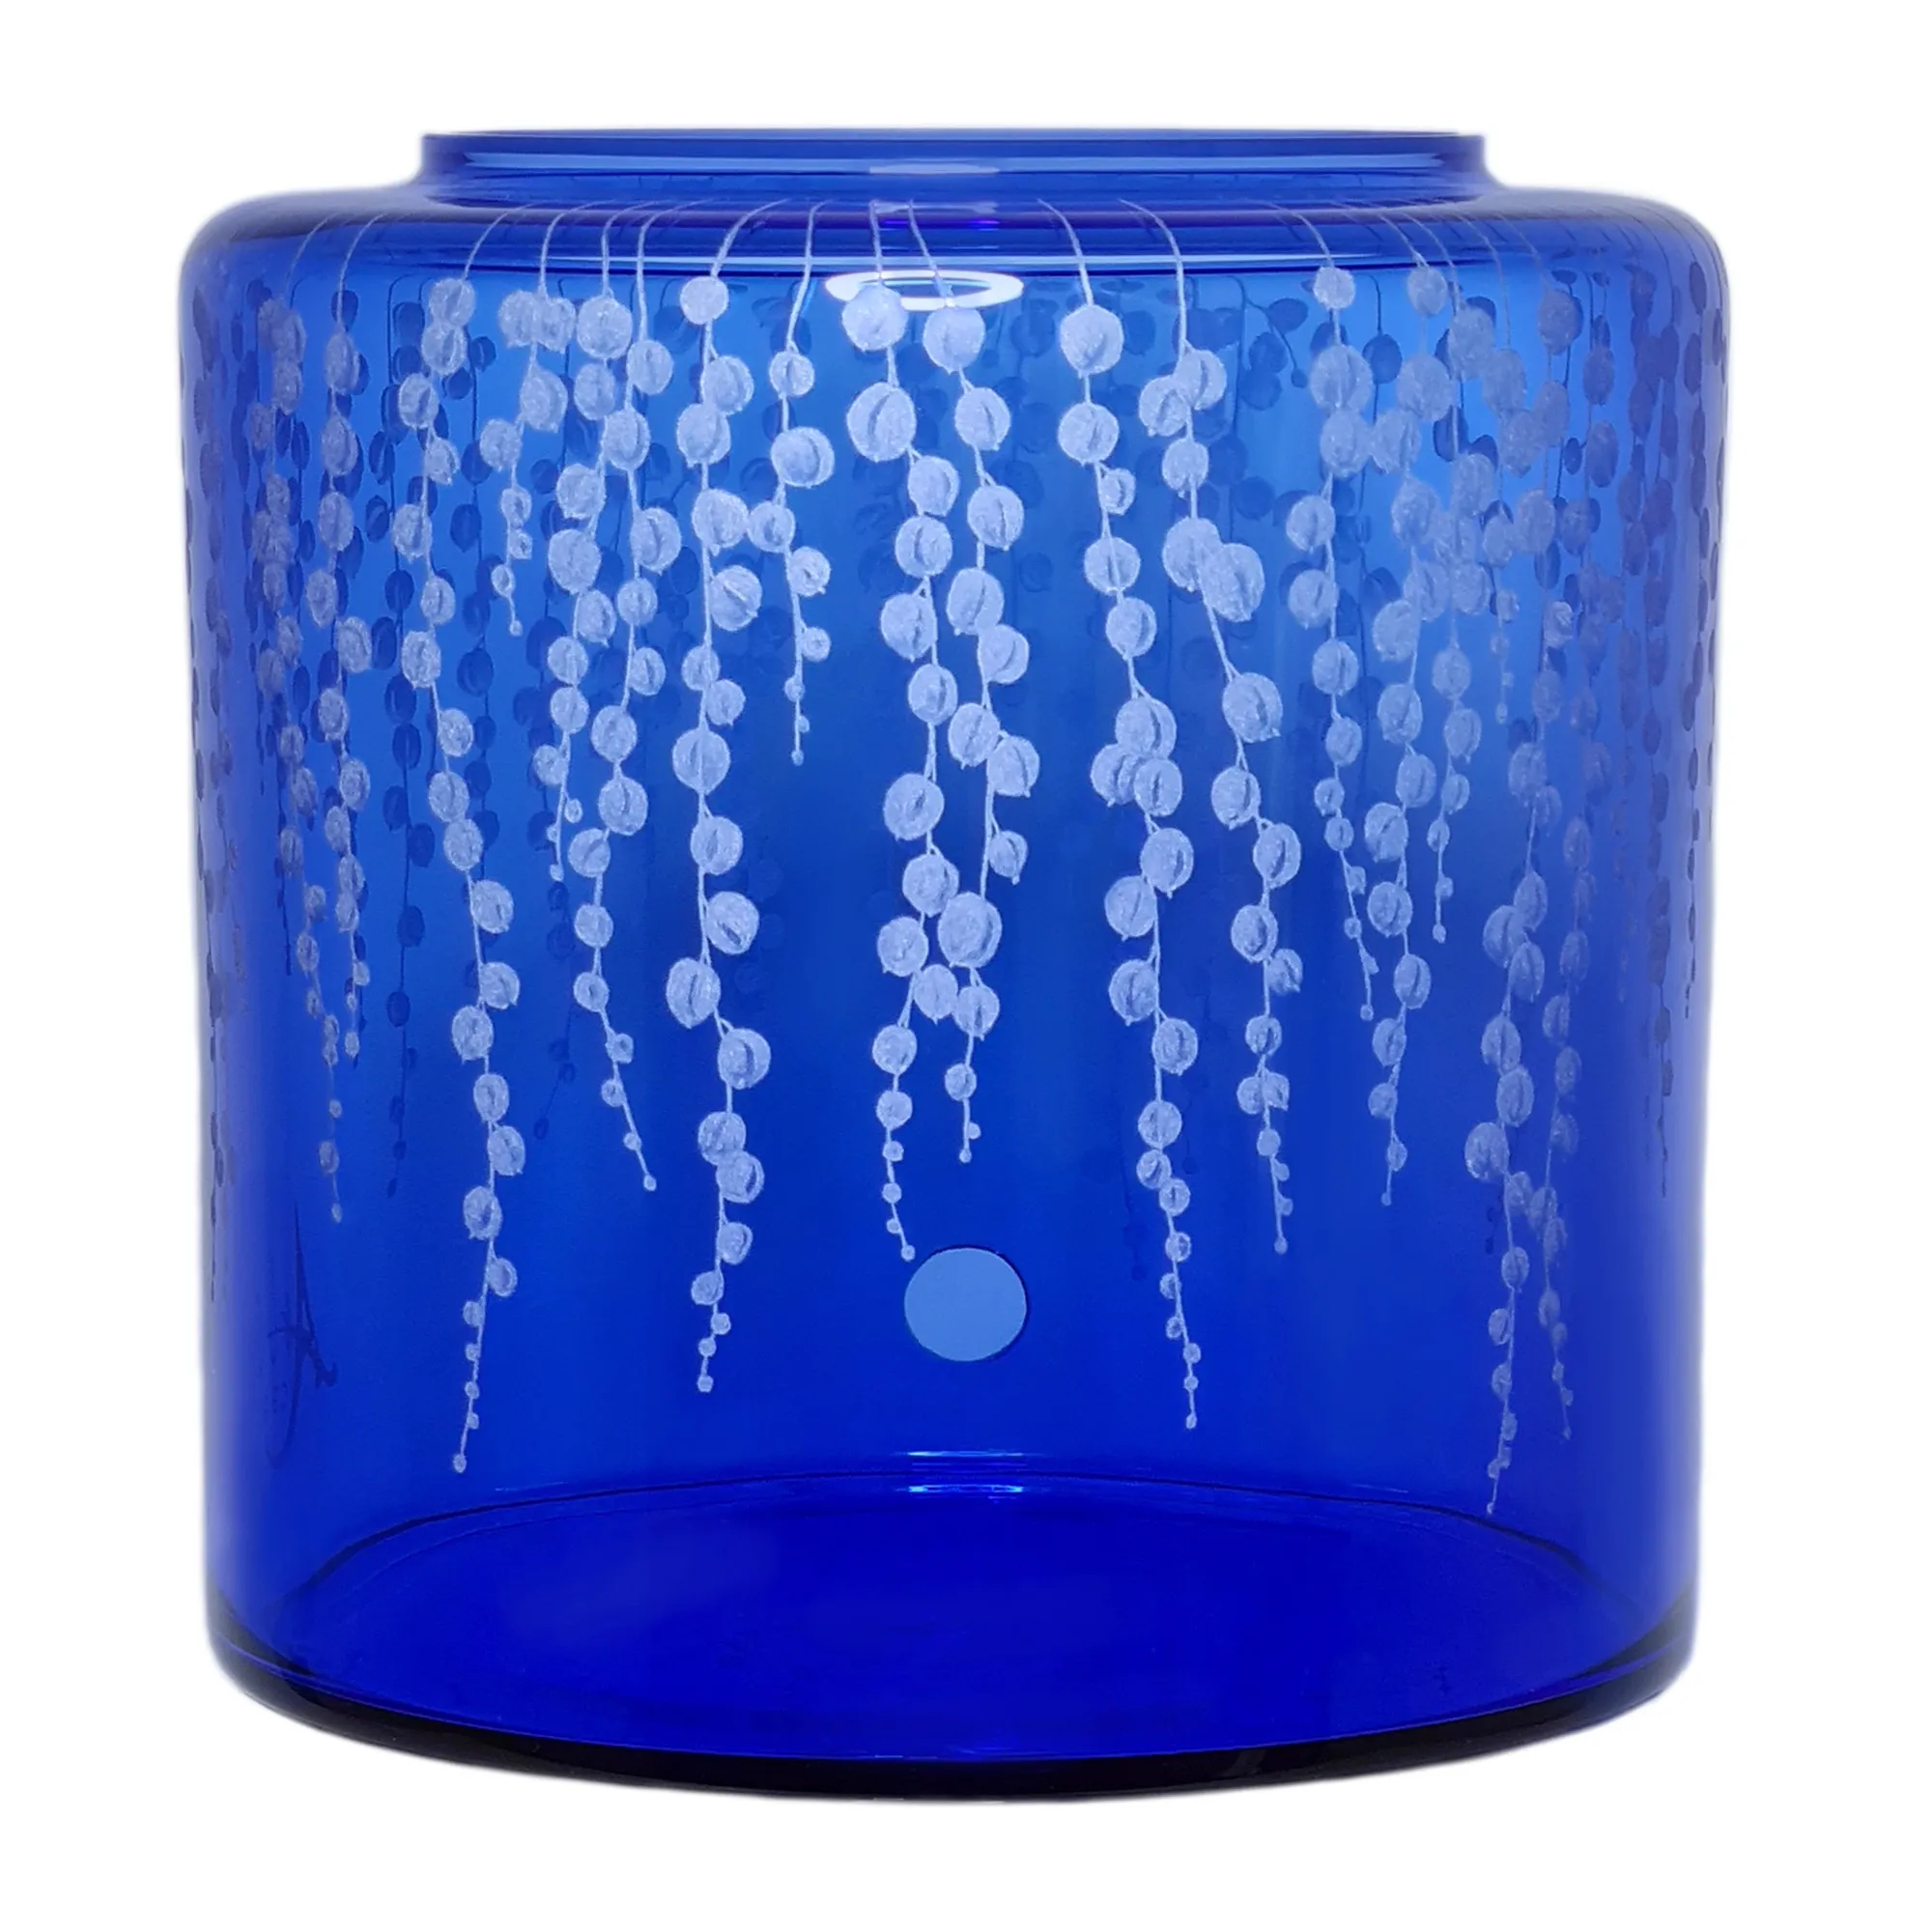 Vorratstank für einen Acala Wasserfilter Mini mit einer Handgravur. Die Gravur zeigt, auf blauem Glas, senecio-rowleyanus, eine Pflanze mit Blättern, die wie Erbsen ausschauen.Ansicht von hinten.